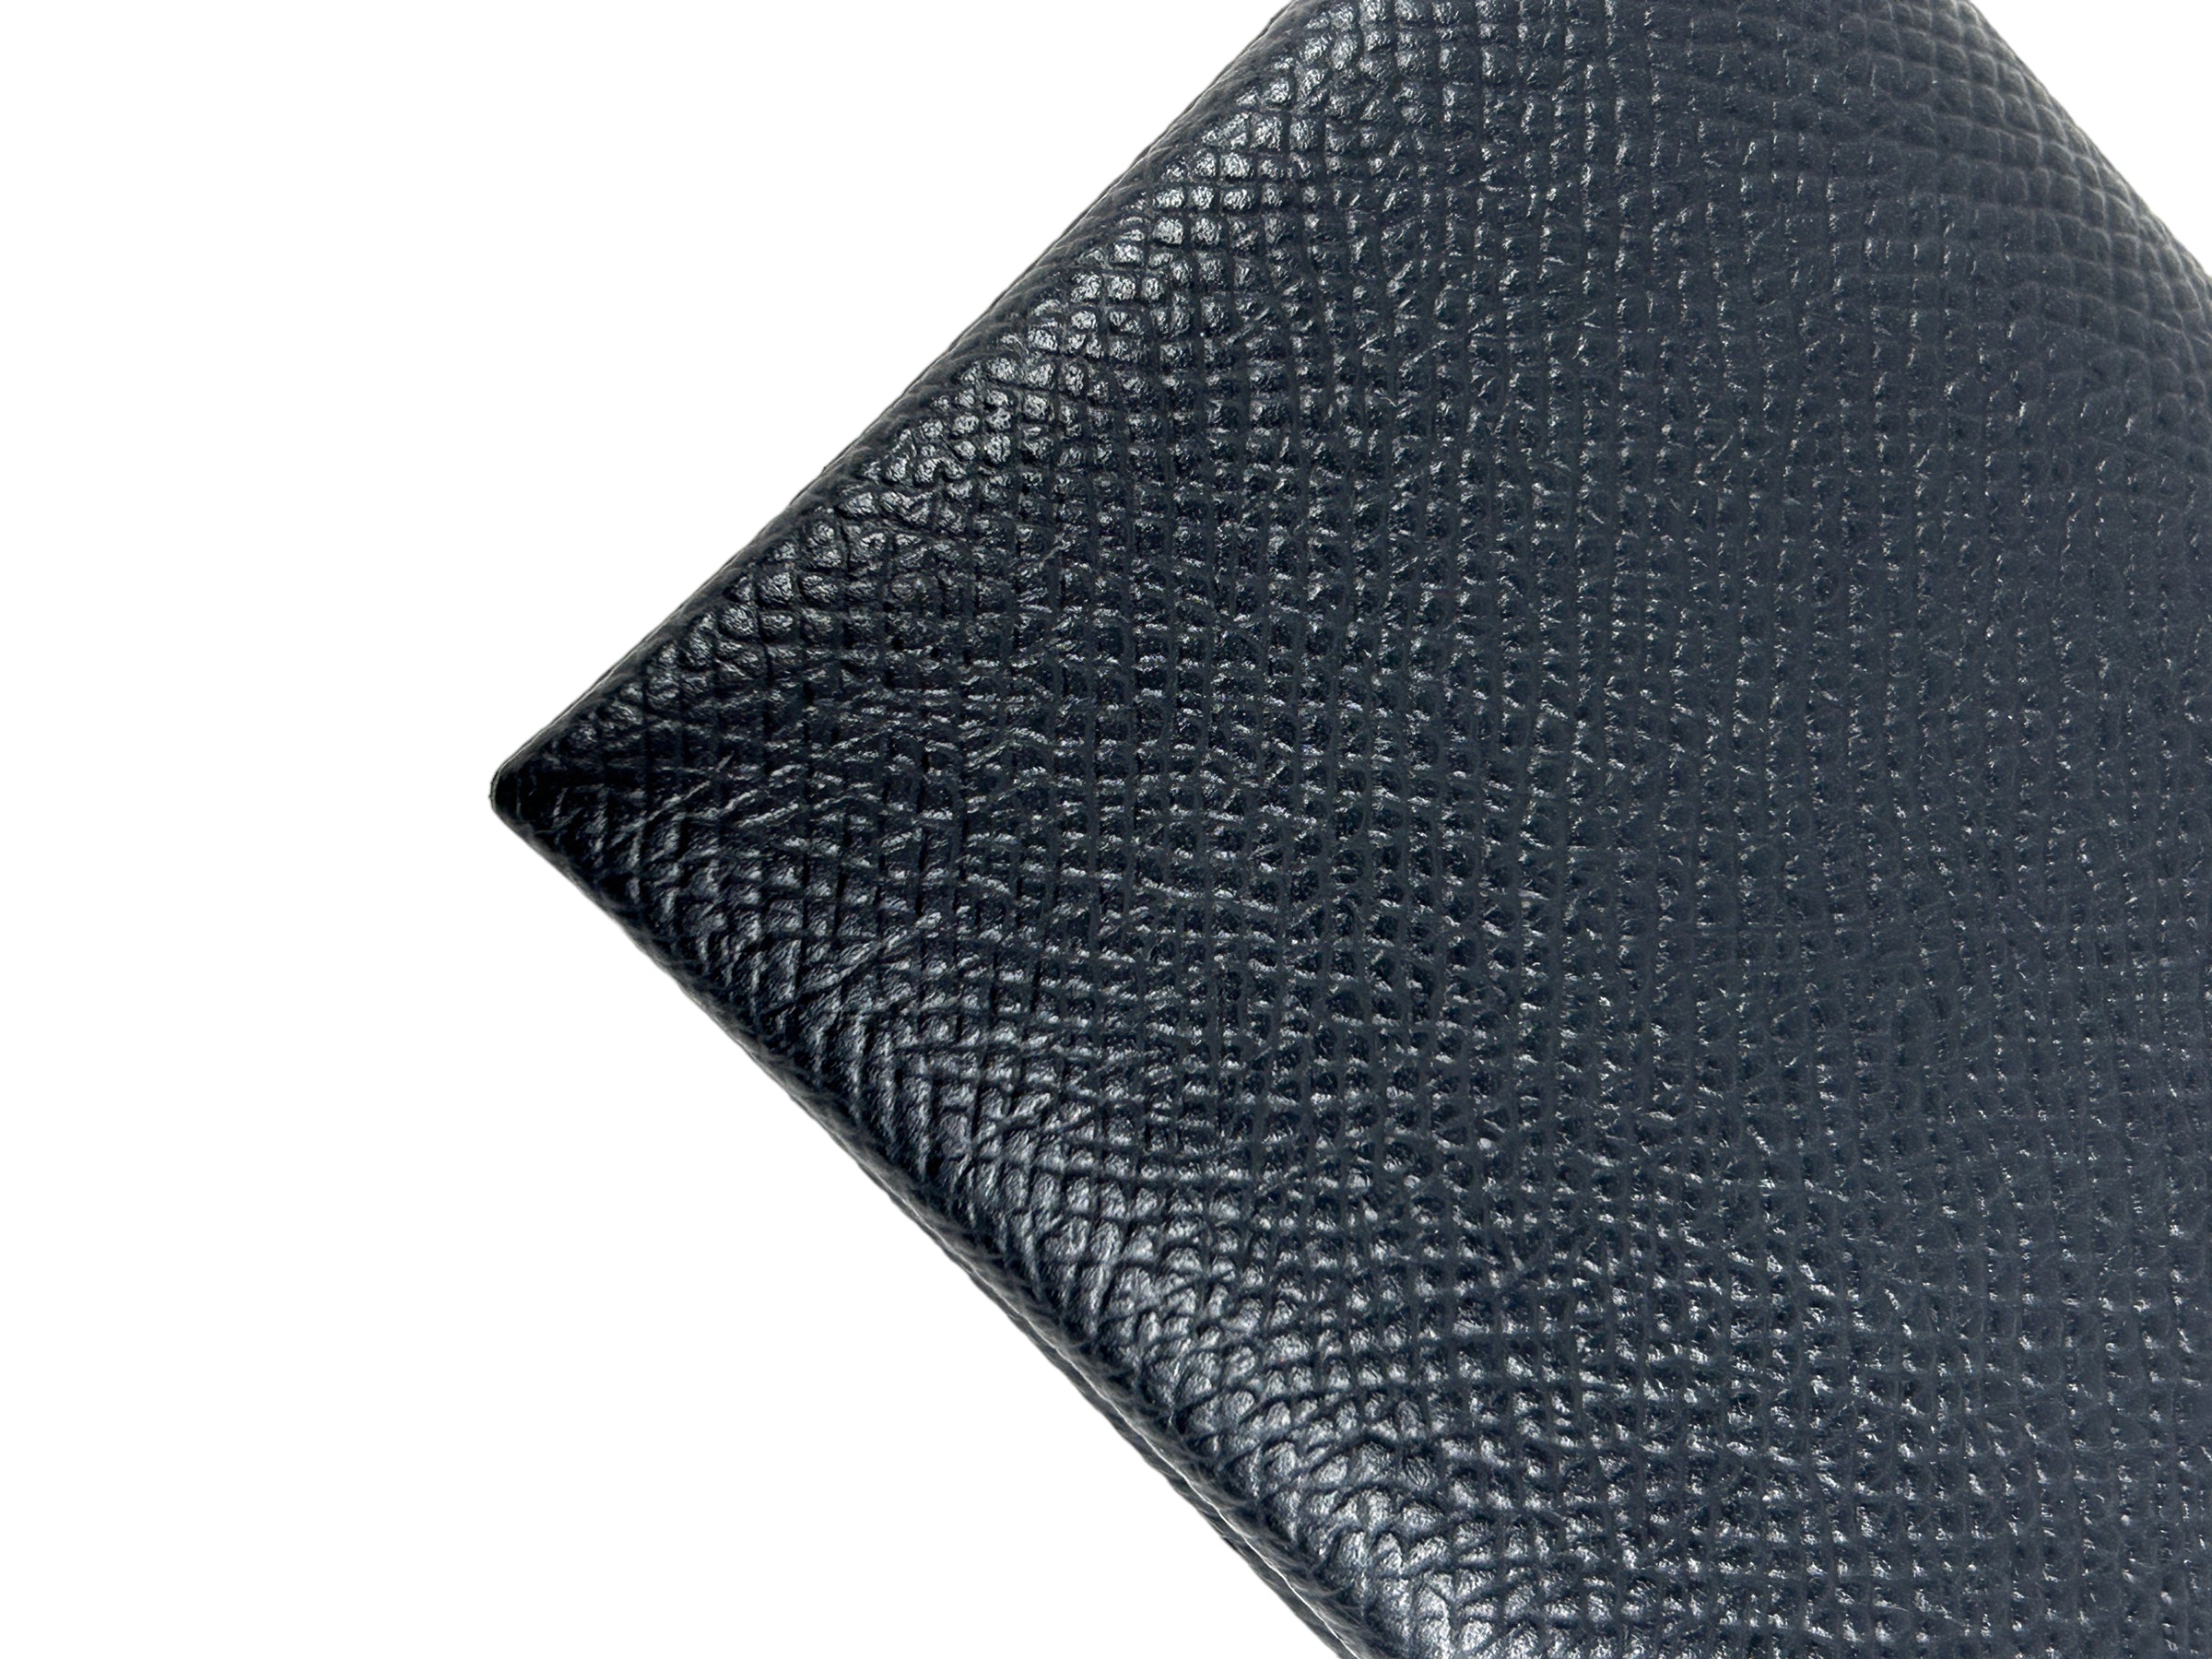 Black Epsom Leather Calvi Card Holder w/PHW